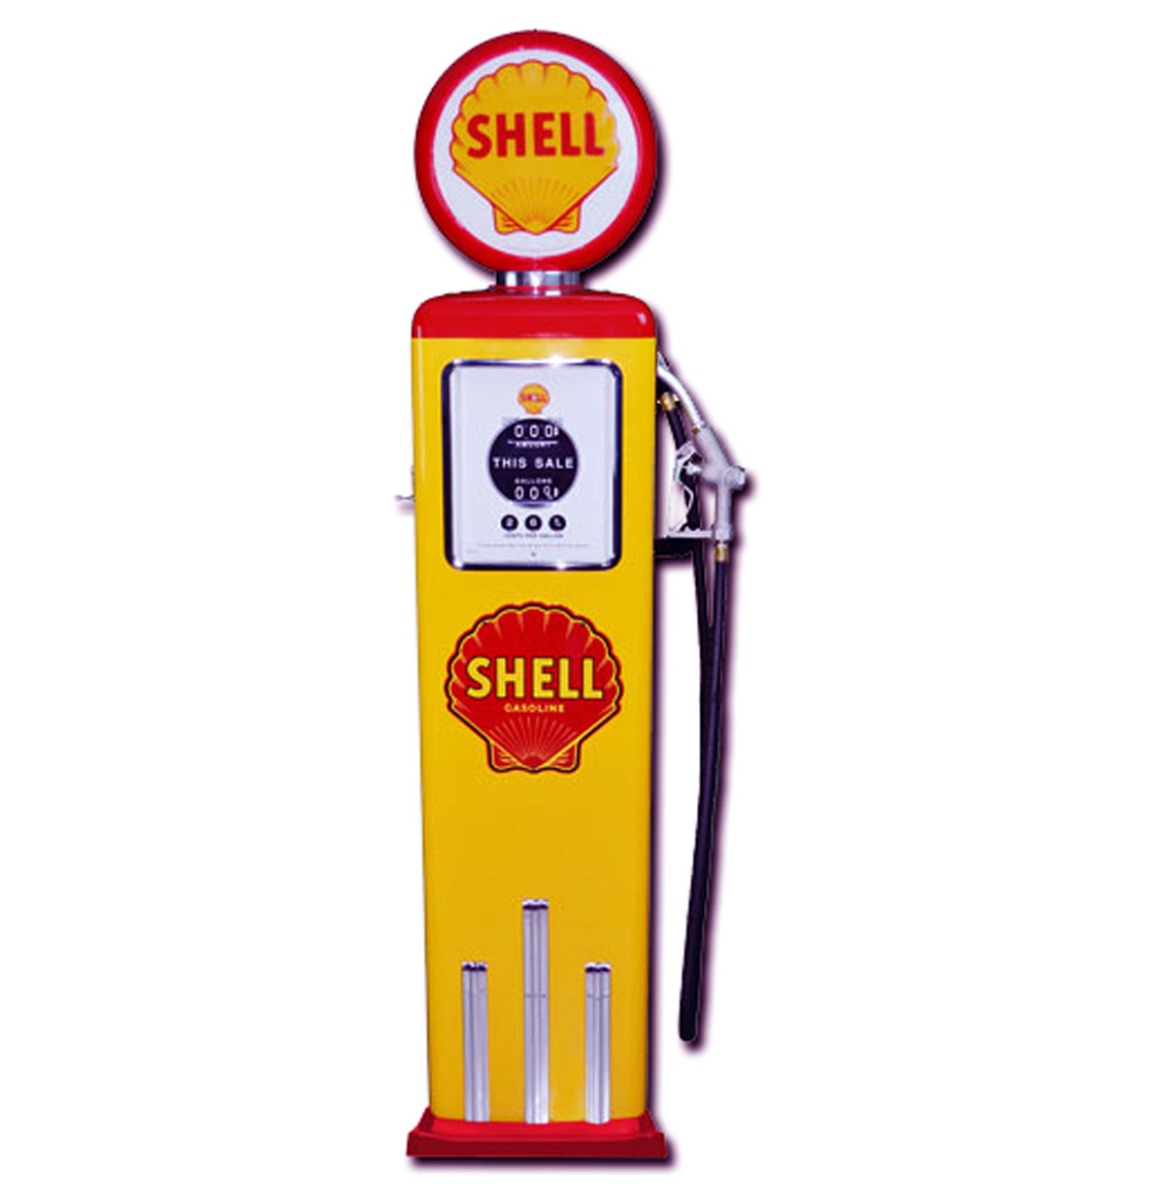 Shell 8 Ball Elektrische Benzinepomp Met Voet - Rood & Geel - Reproductie